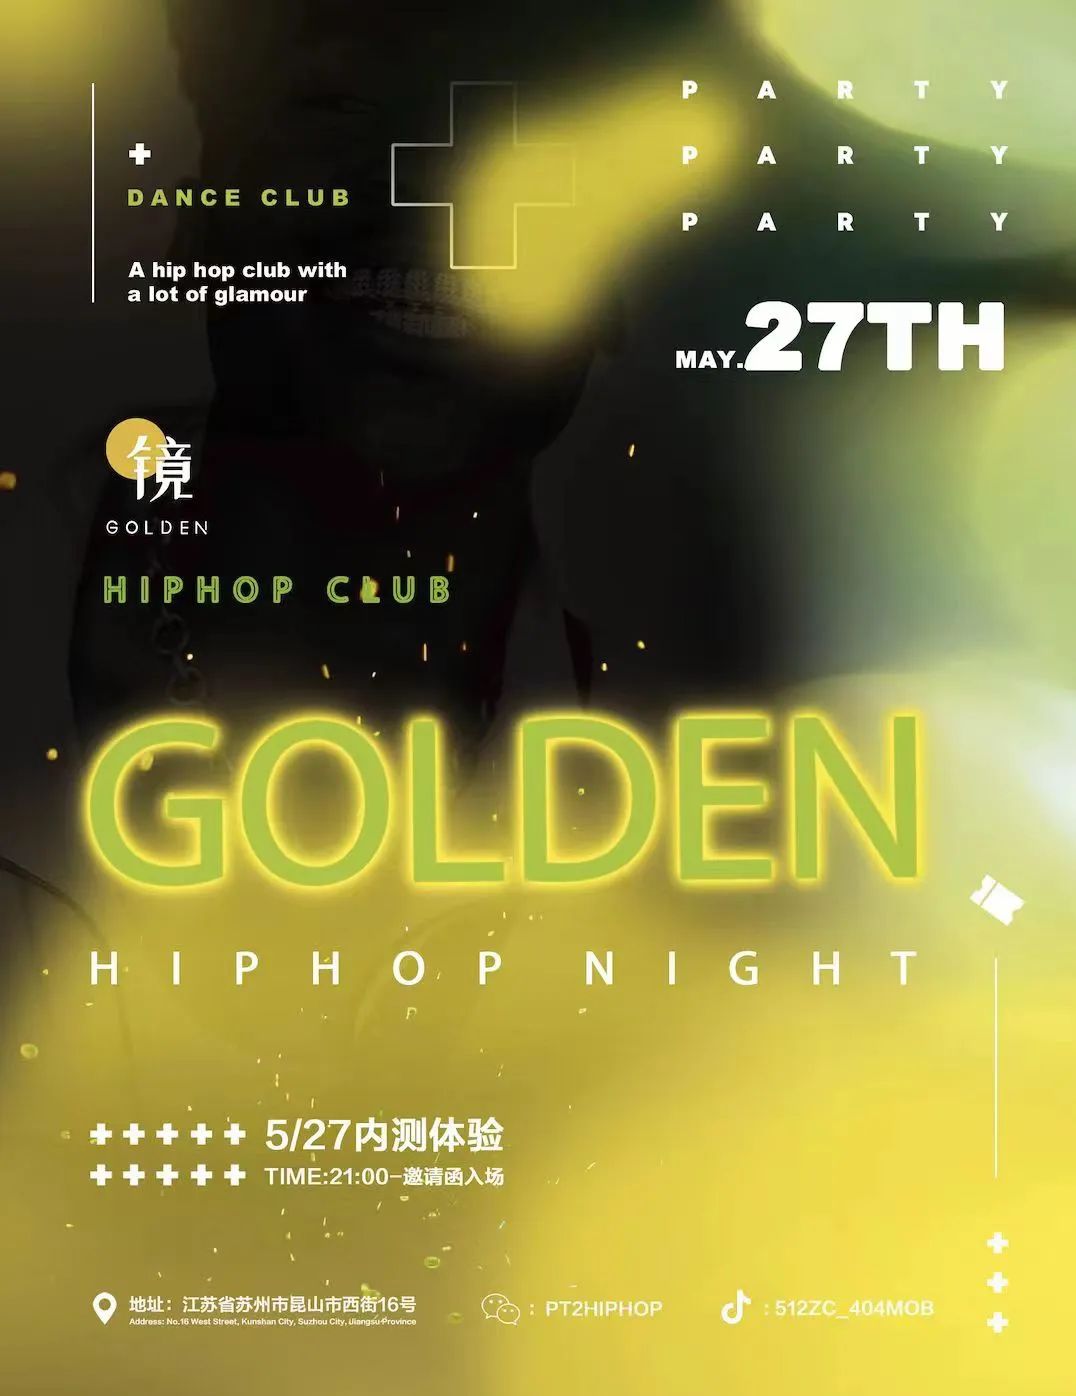 #镜Golden 5月27日 一家即将成为昆山最具代表性的HipHop Club 内测Party来了-苏州镜Golden酒吧